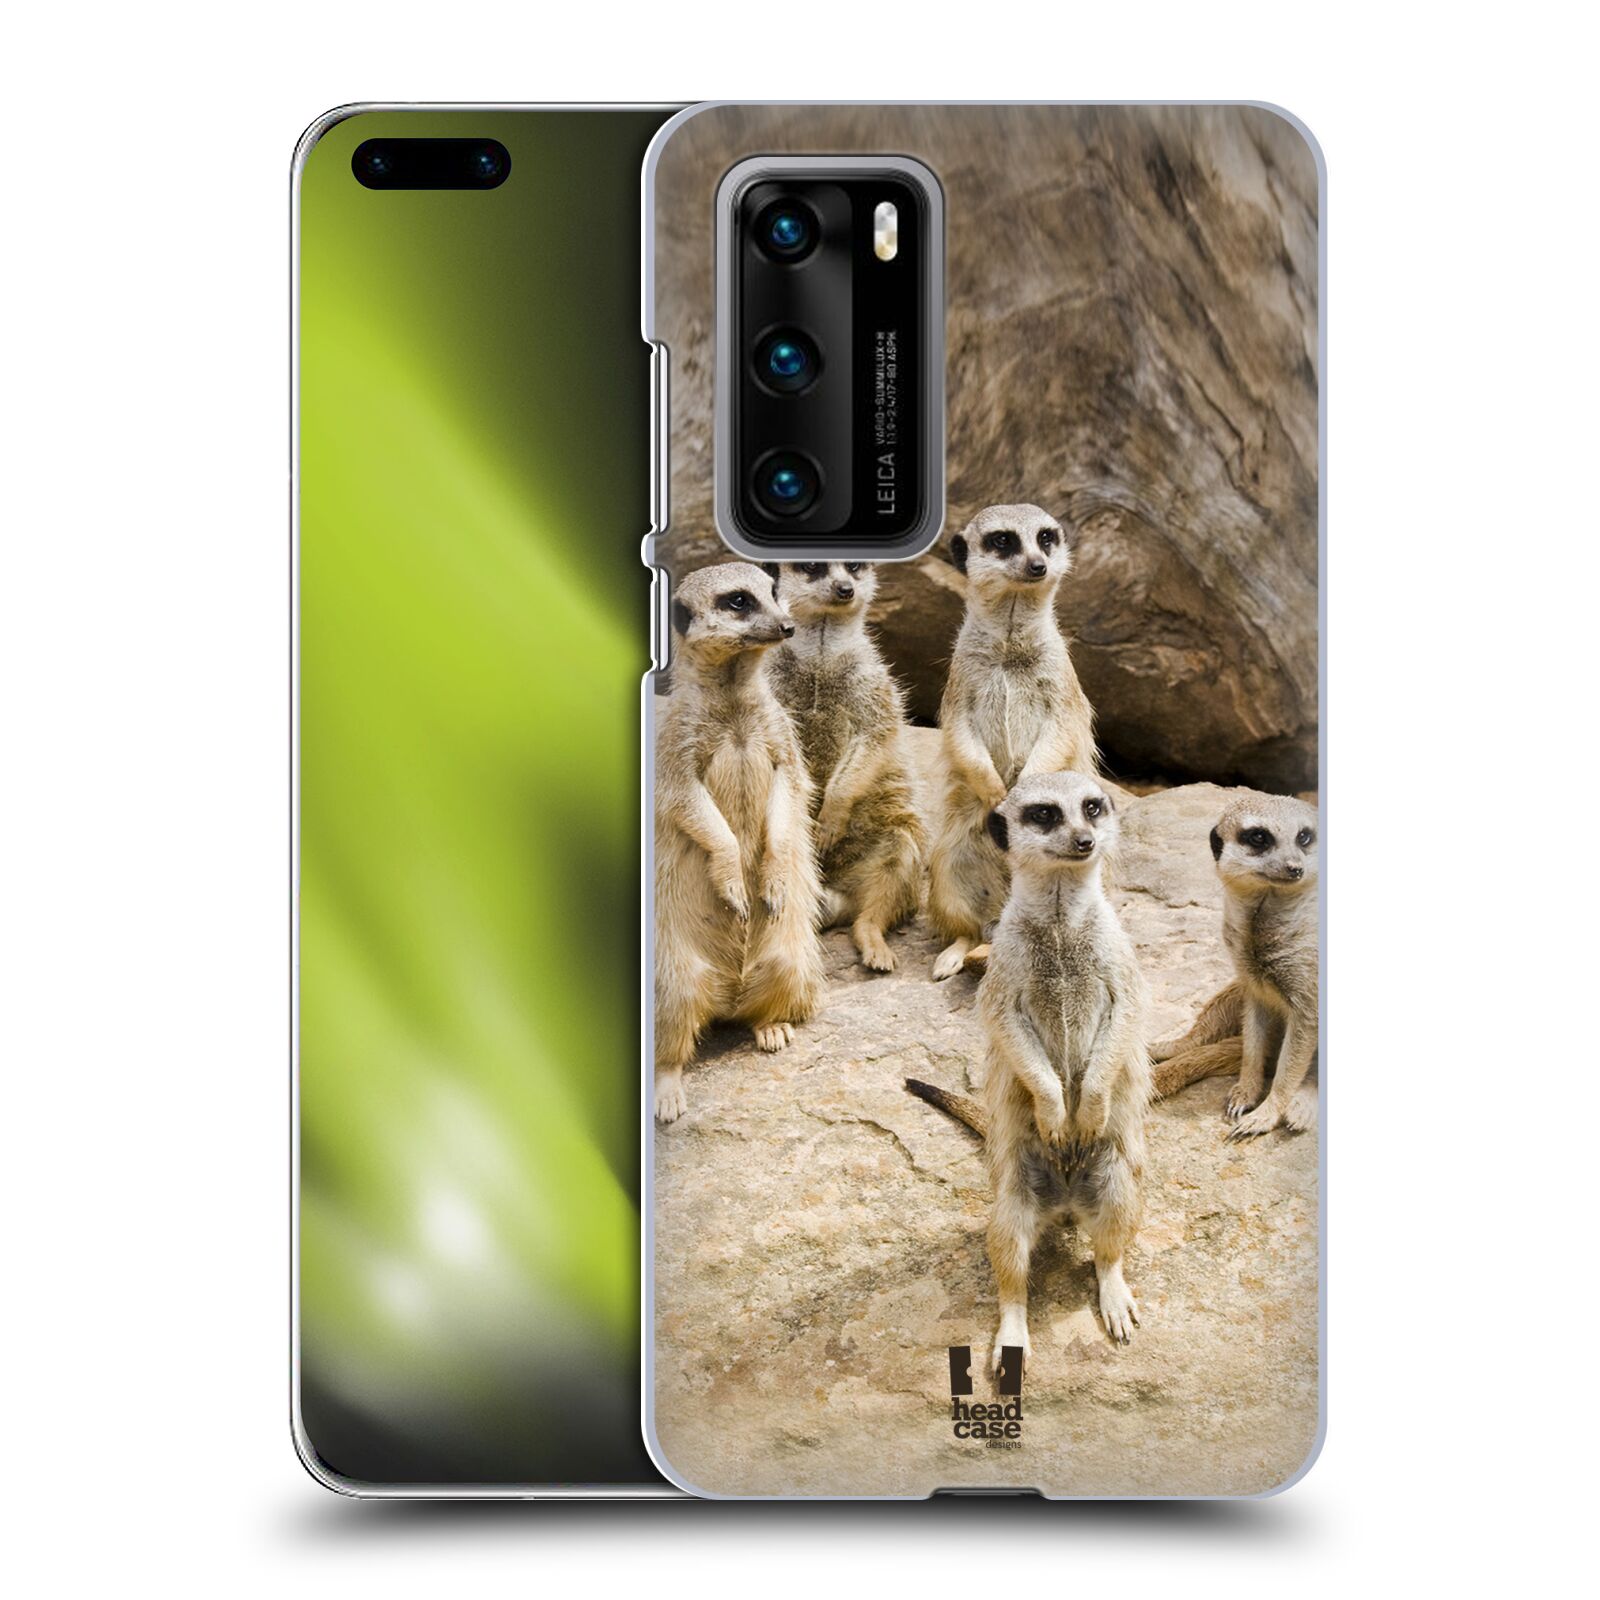 Zadní obal pro mobil Huawei P40 - HEAD CASE - Svět zvířat roztomilé surikaty